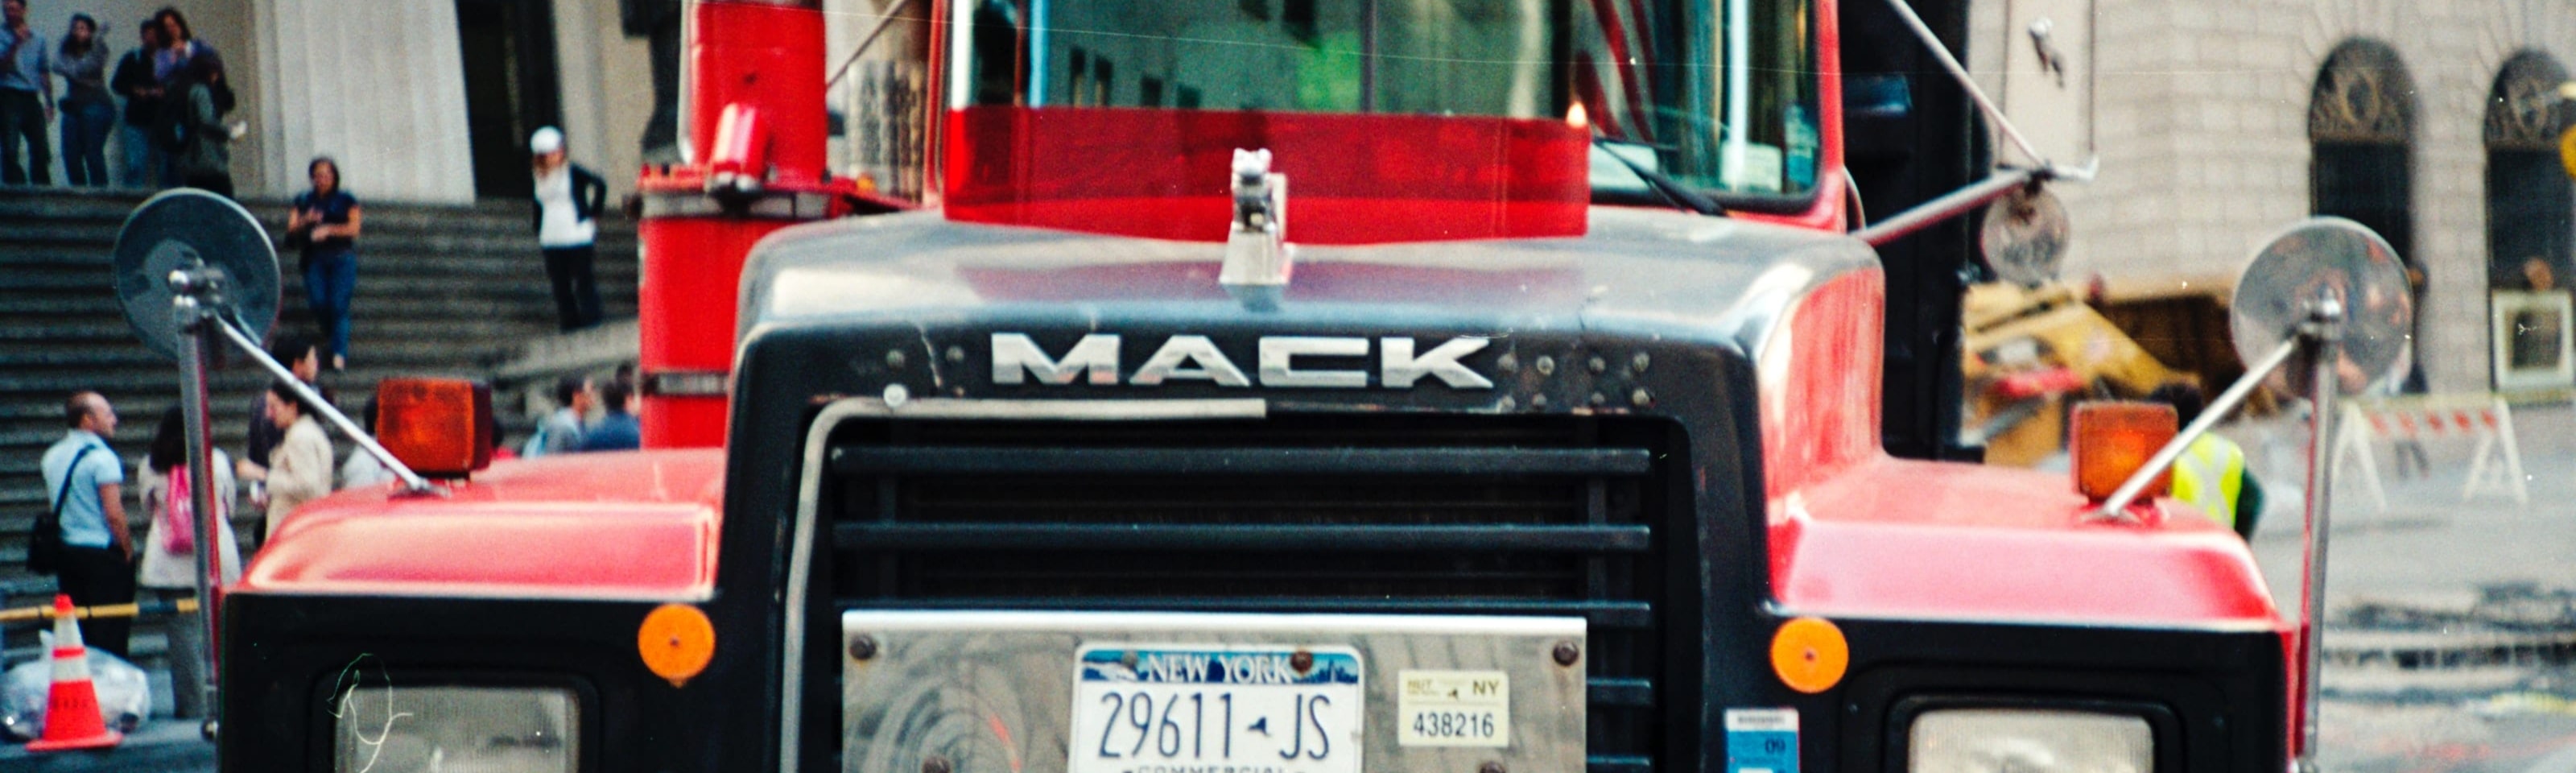 Camión Mack con matrícula de Nueva York